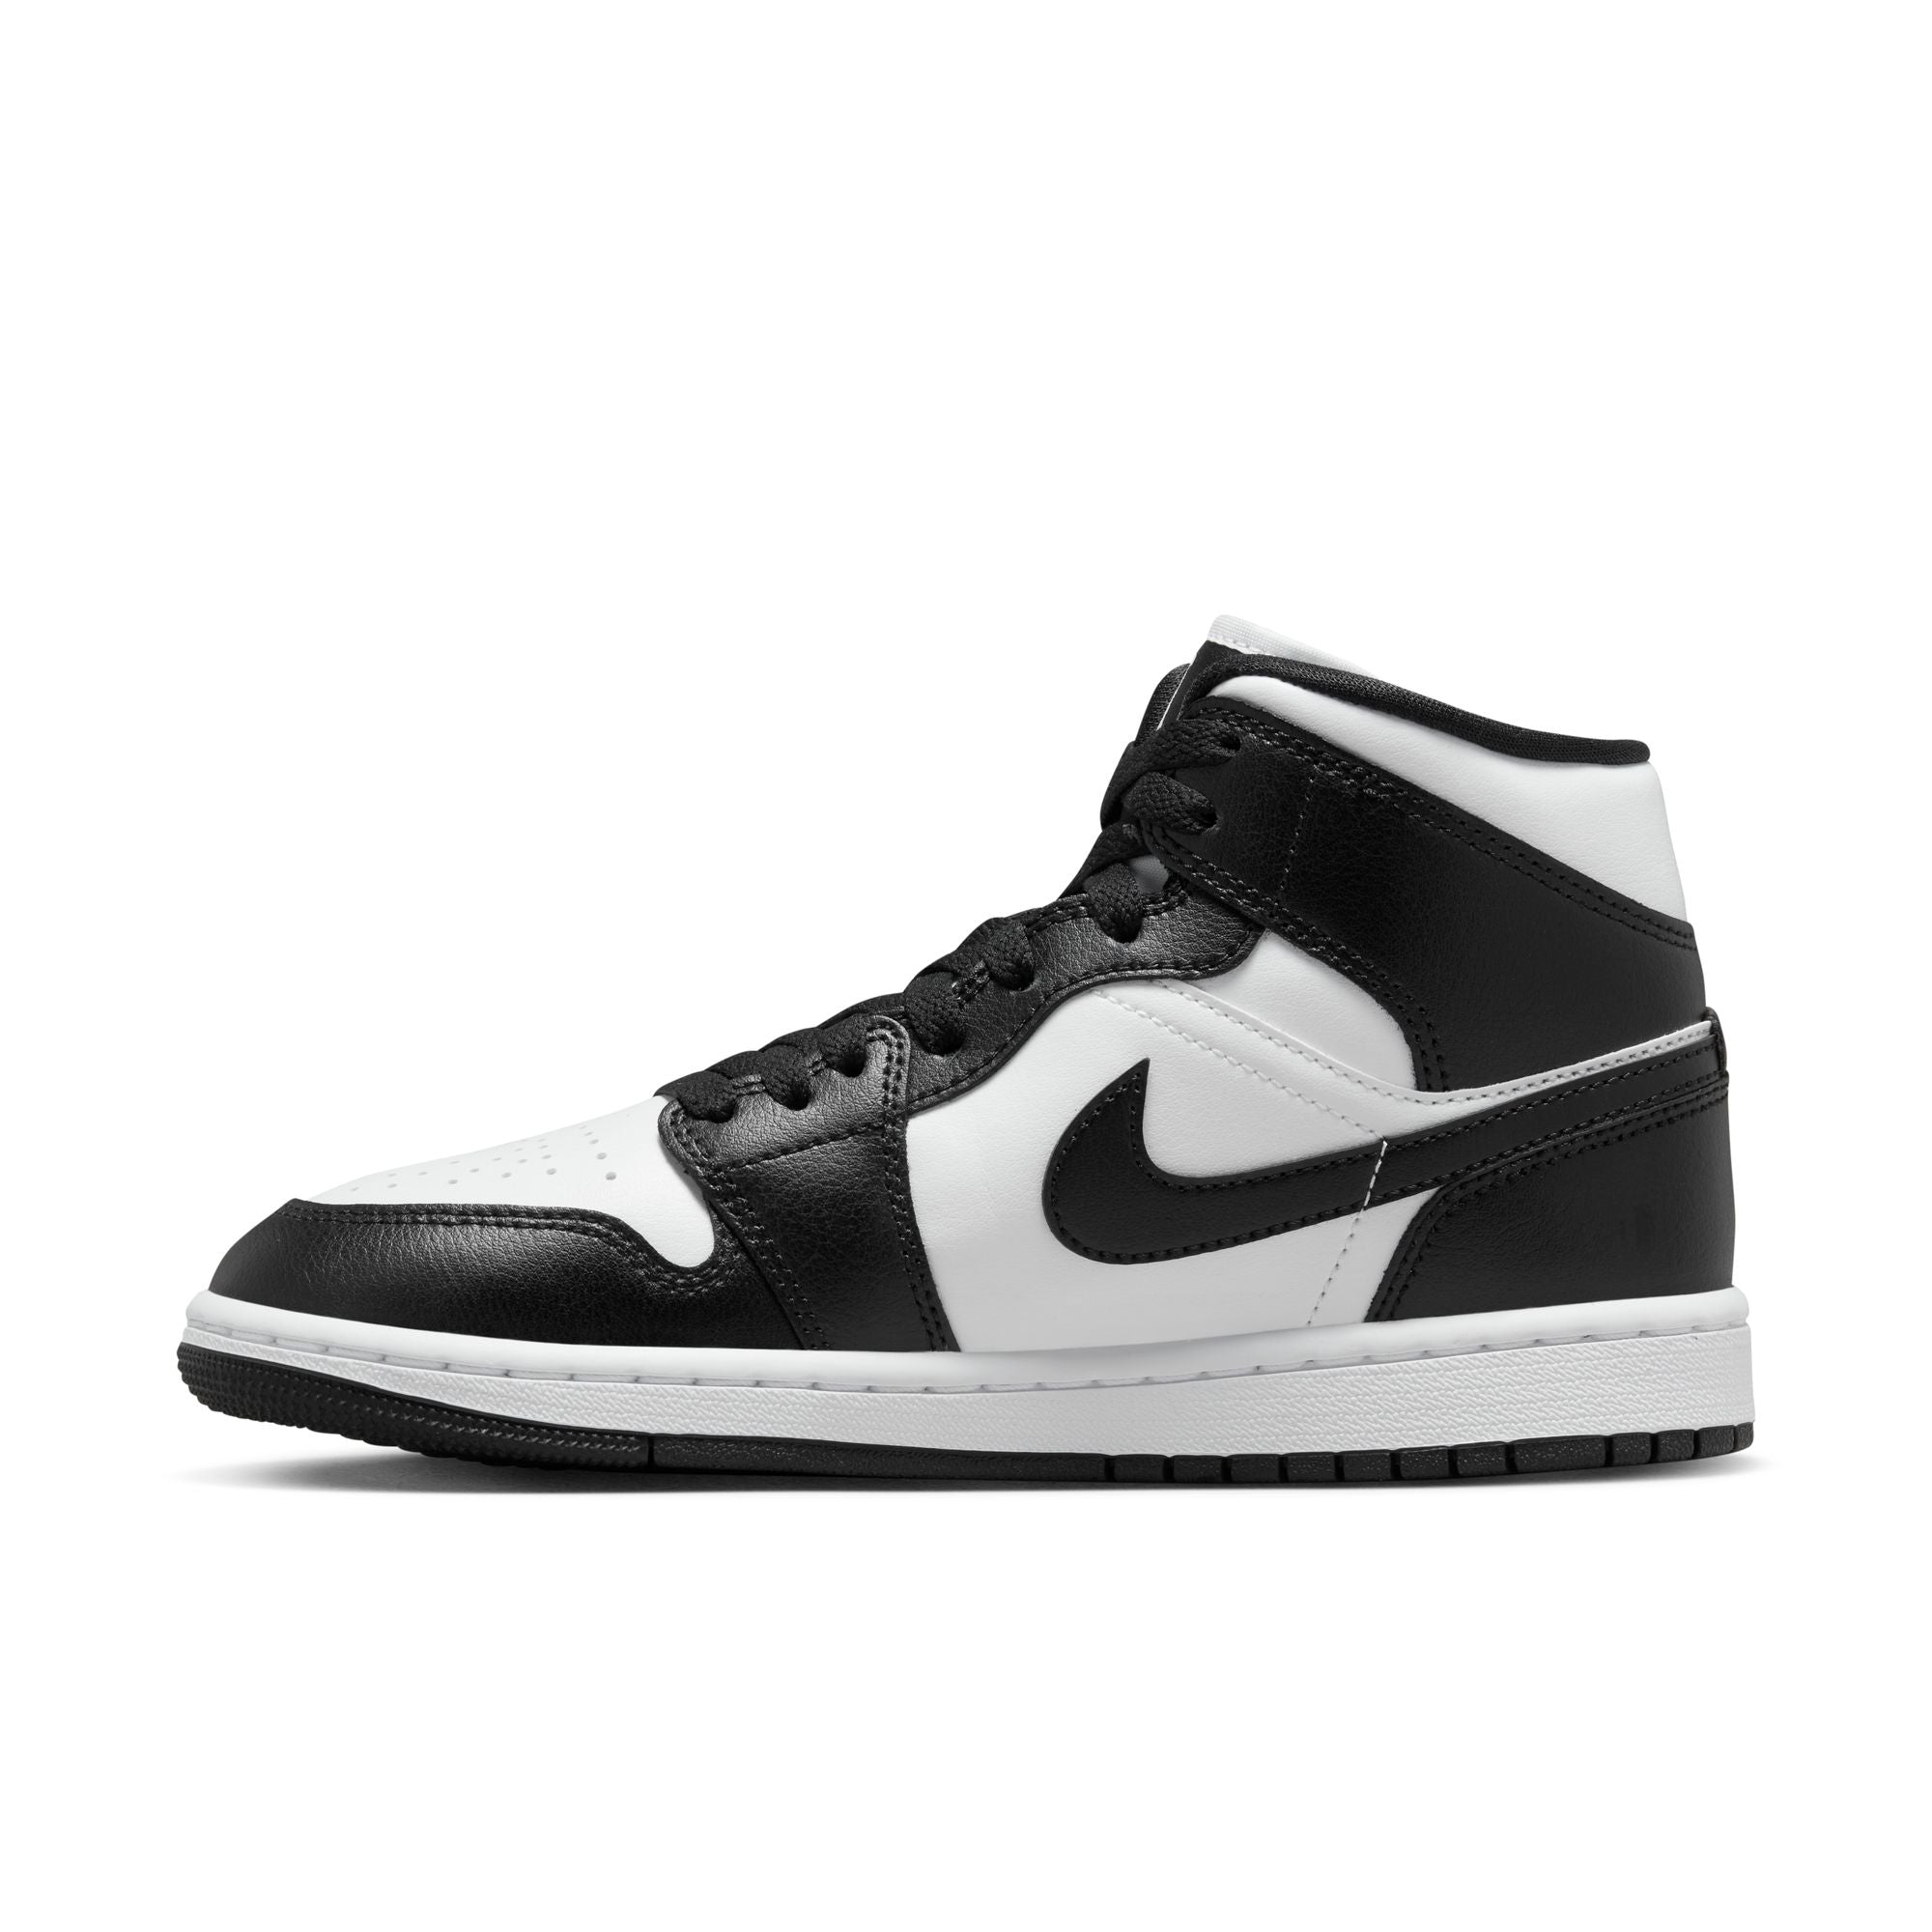 WMNS Nike Air Jordan 1 MID Panda